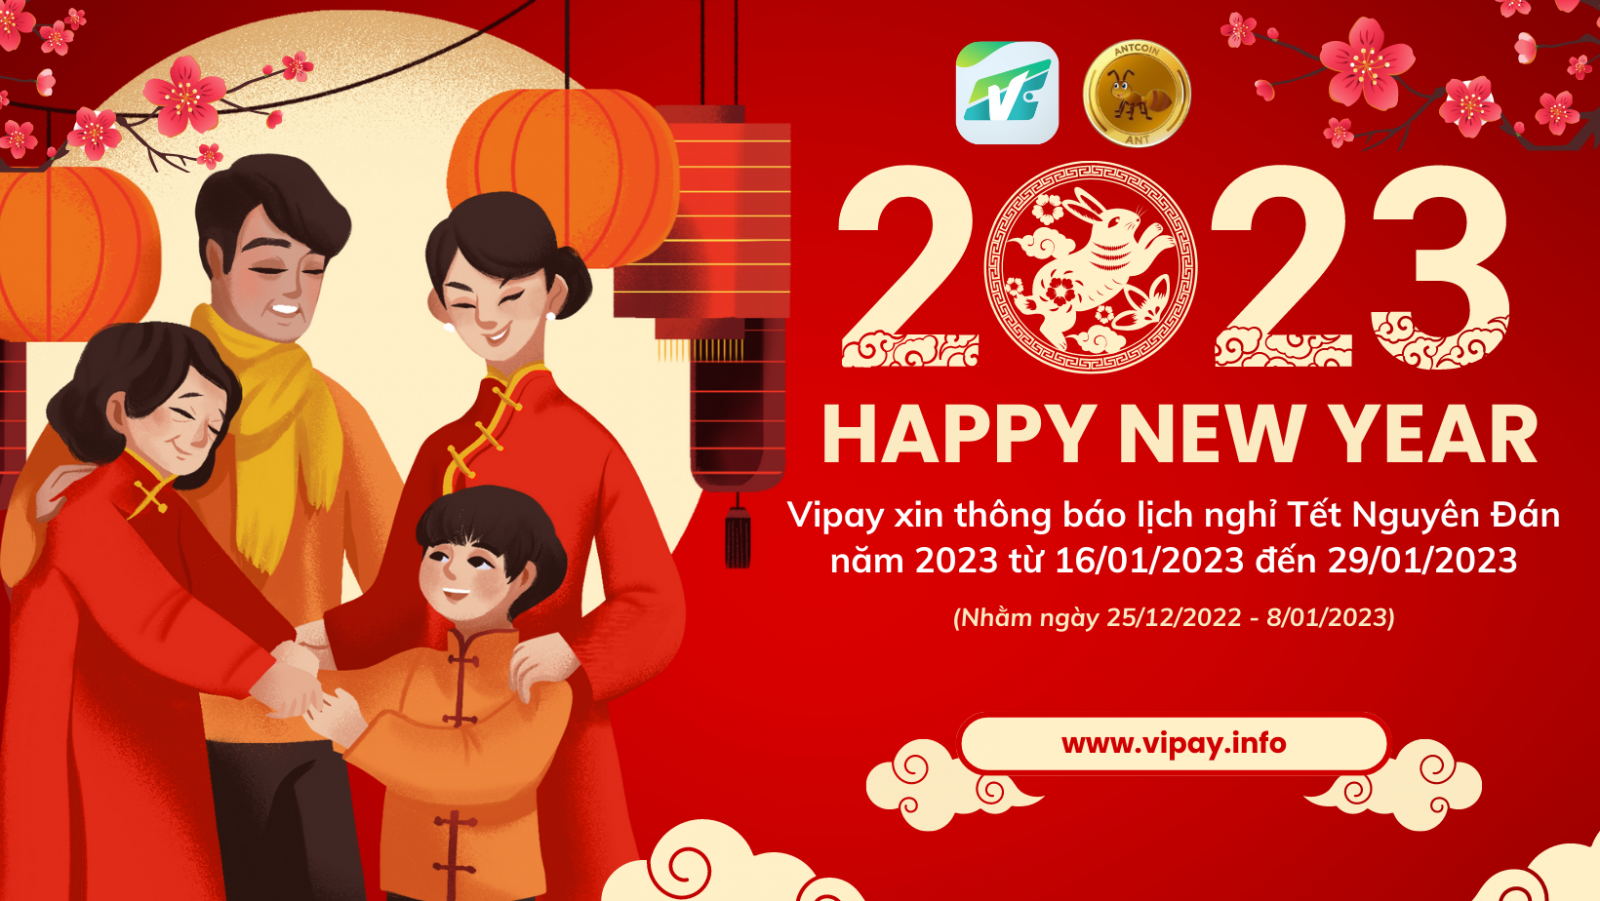 Ví điện tử Vipay thông báo nghỉ Tết Nguyên Đán năm 2023